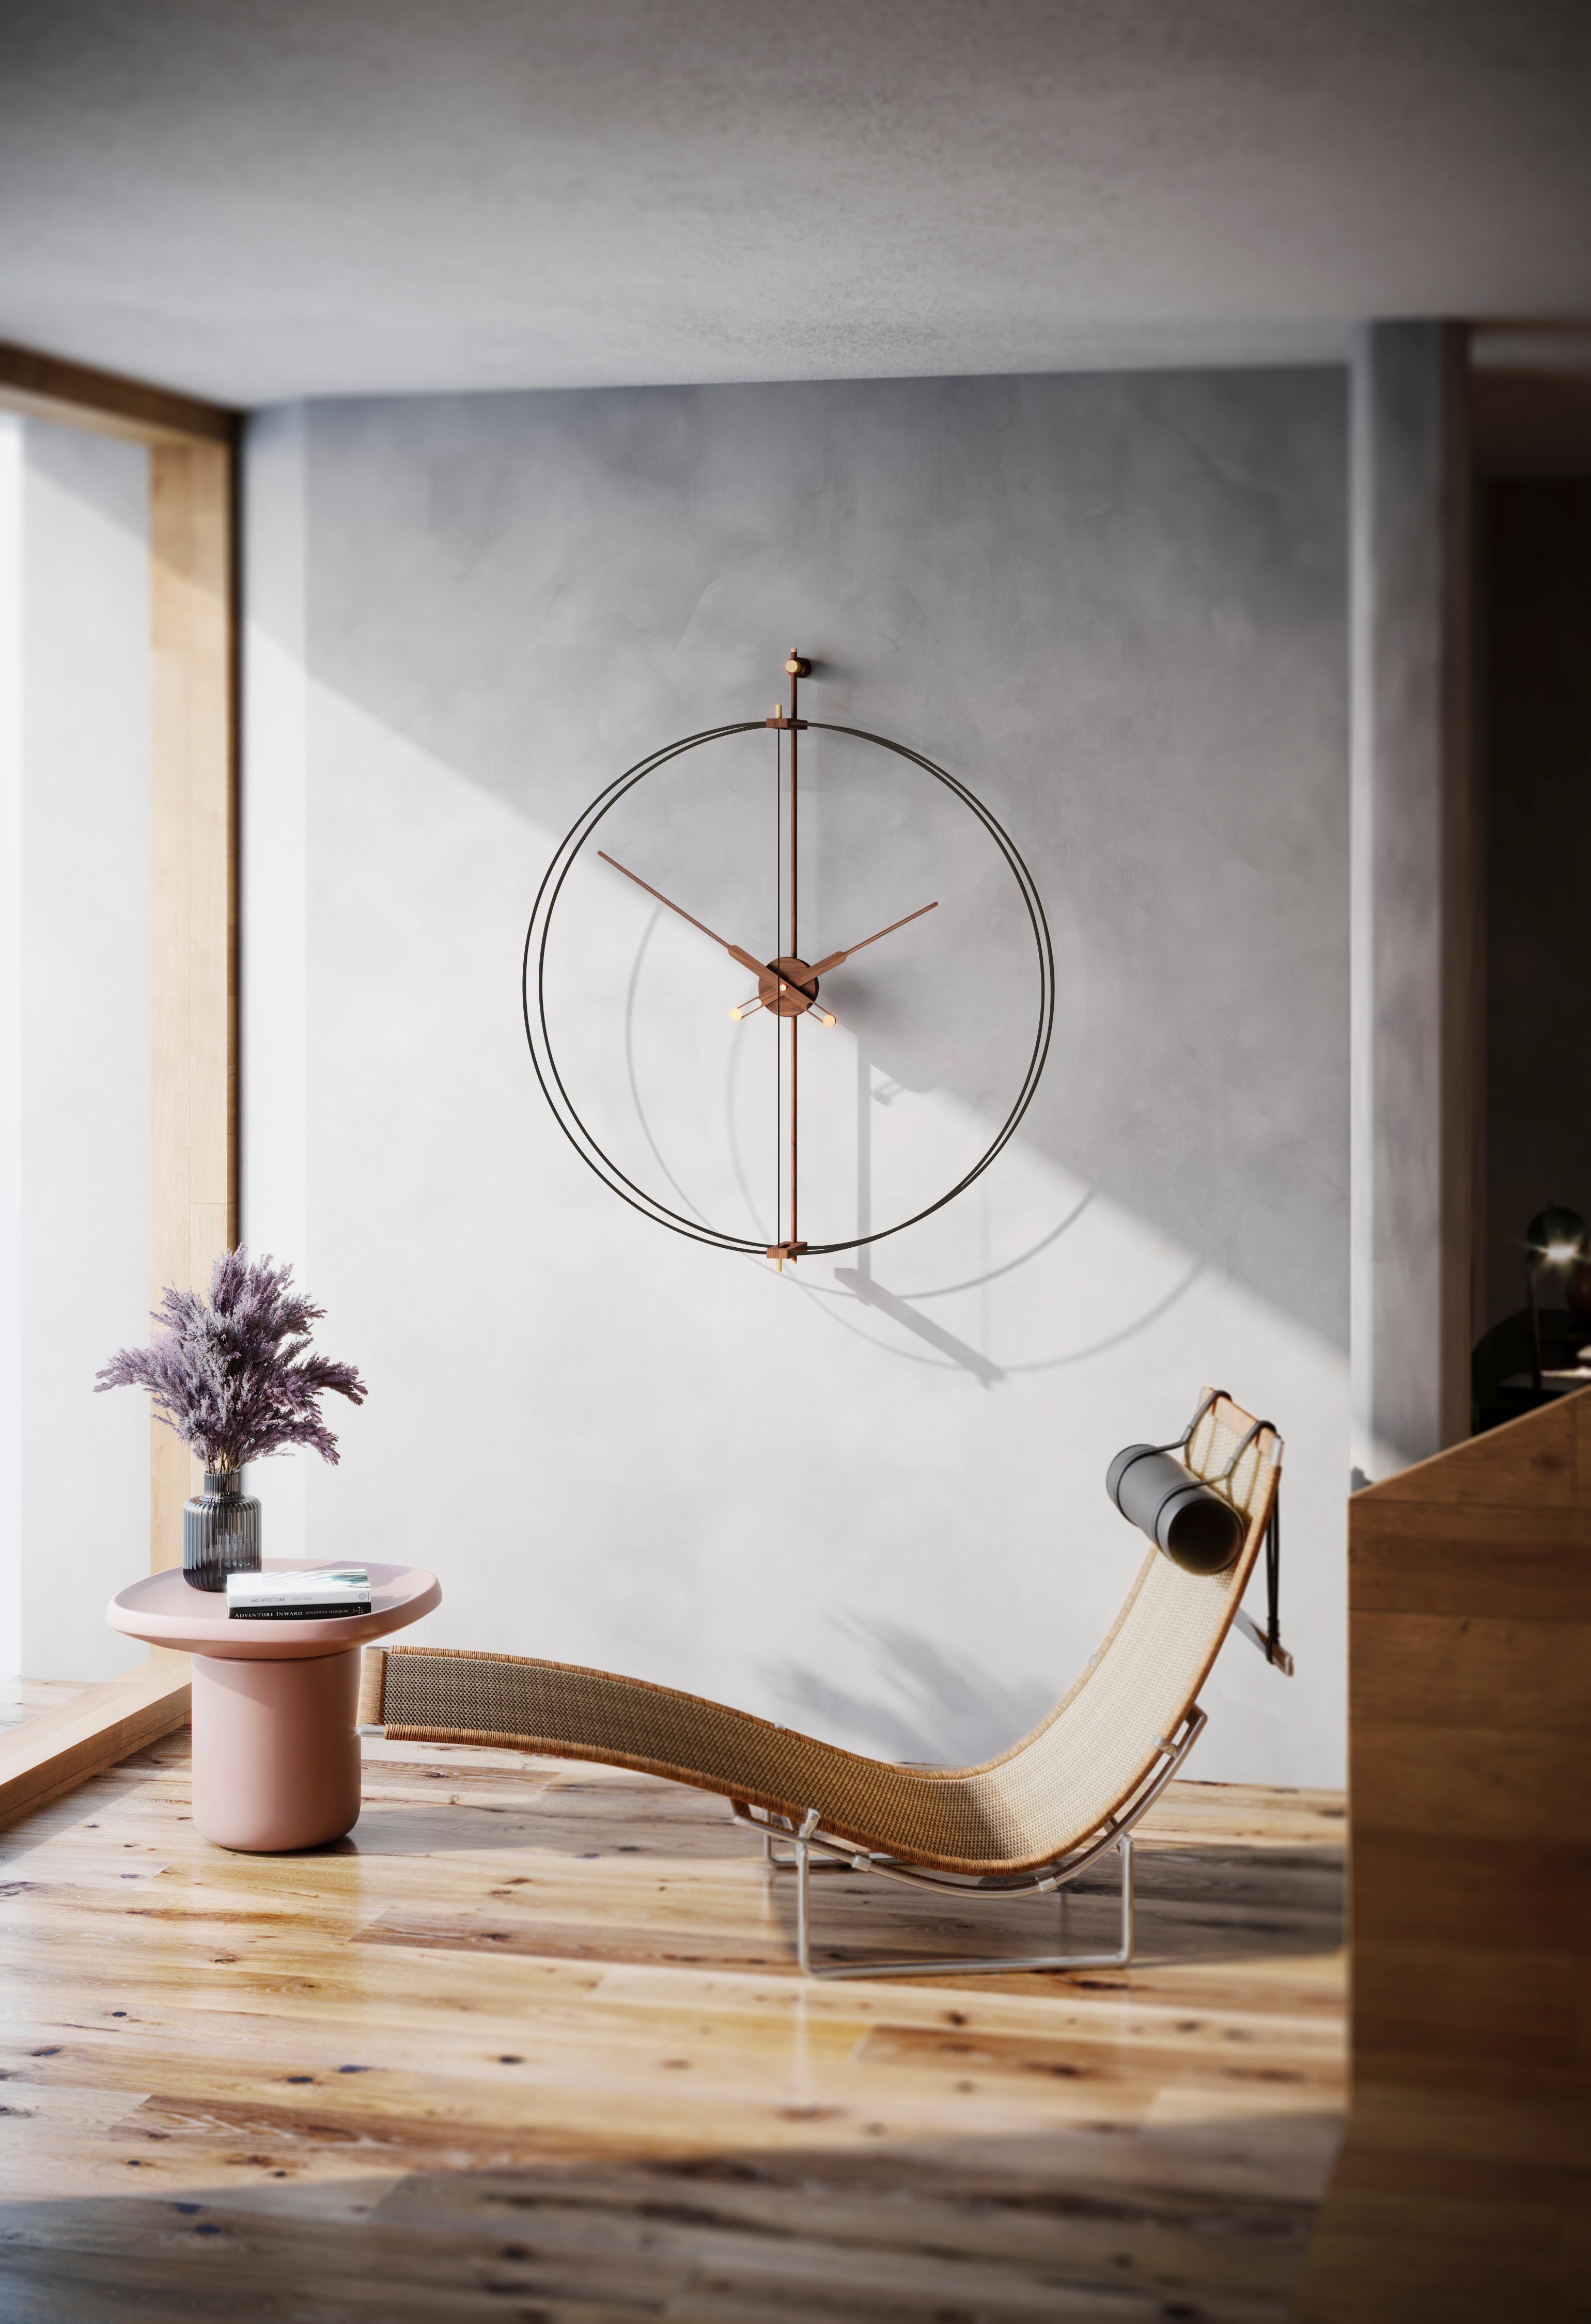 Renovierung eines der repräsentativsten Modelle von Nomon, der legendären Barcelona-Uhr. Einbeziehung eines glamouröseren Stils in das Design.
Er zeichnet sich durch die Messingoberfläche in seinem Glasfaser-Doppelring aus.

Ringe aus Messing,